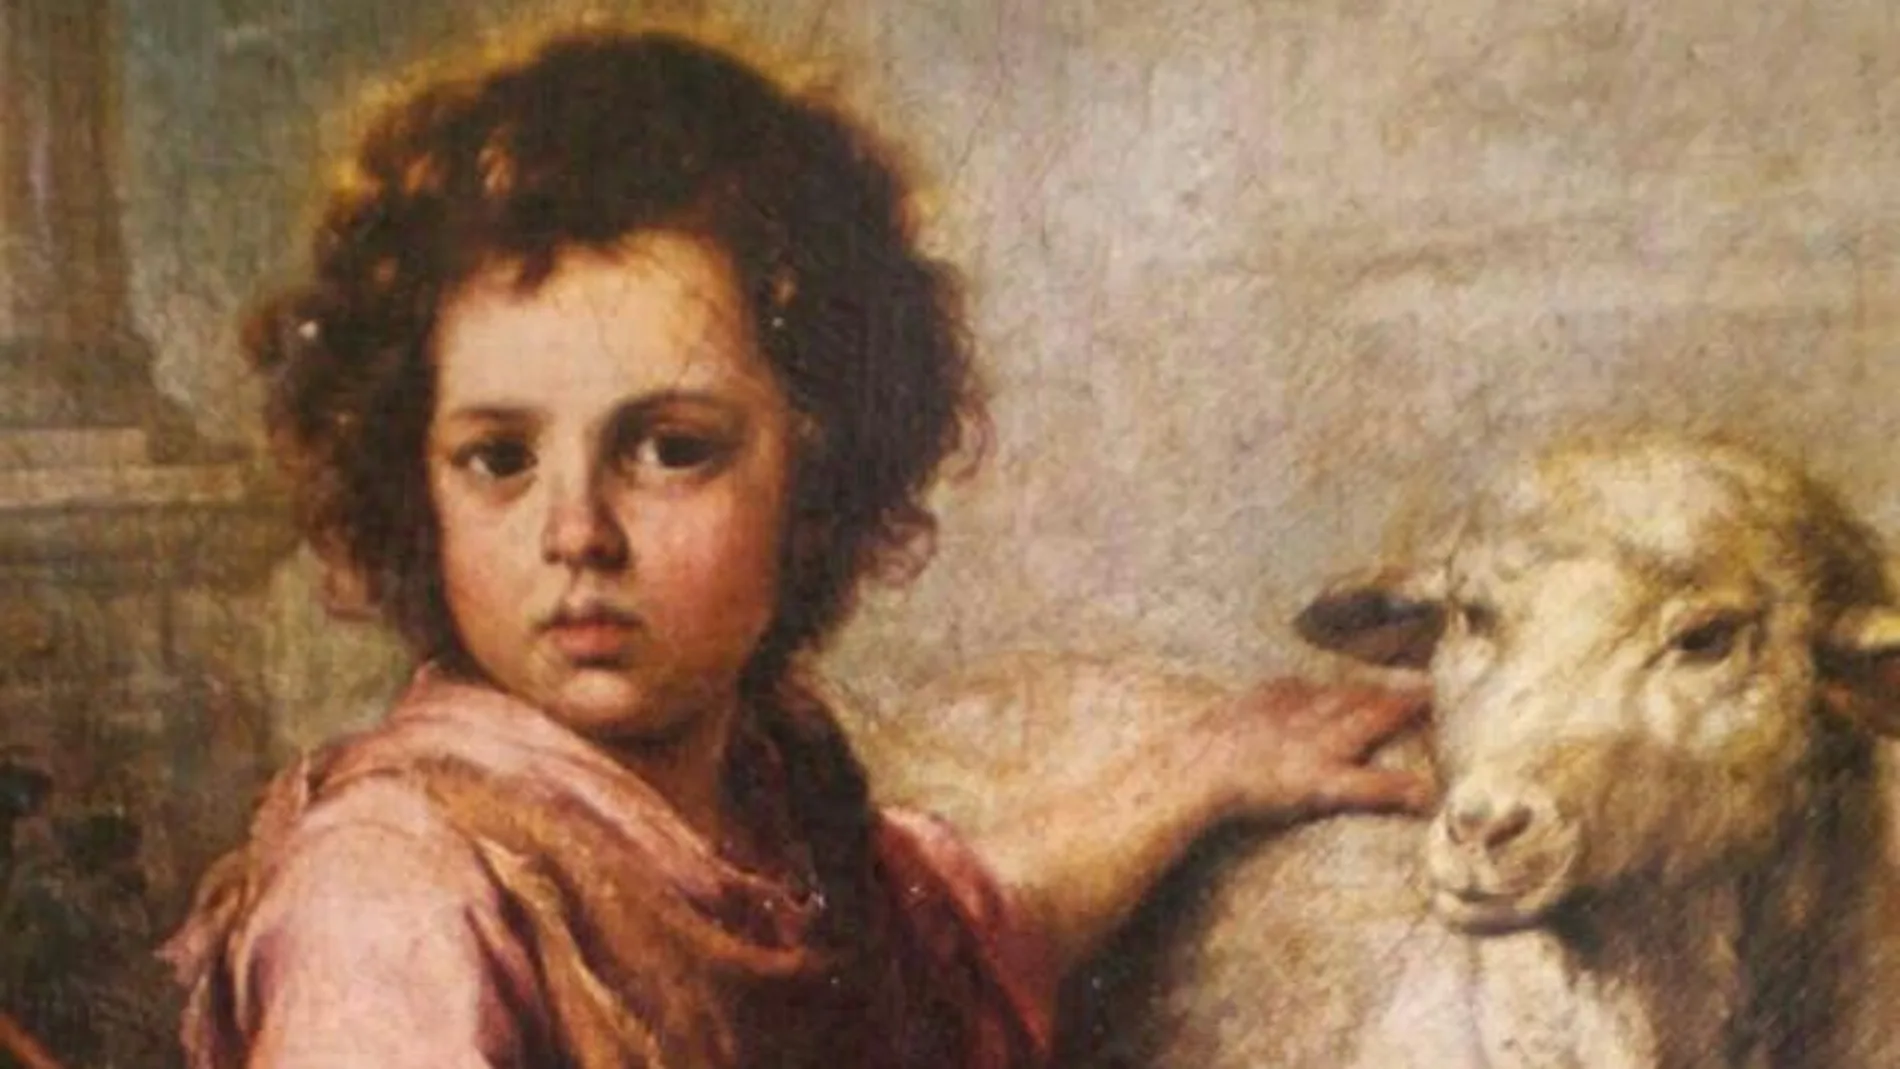  San Juan Bautista niño y el cordero, de Francisco de Goya